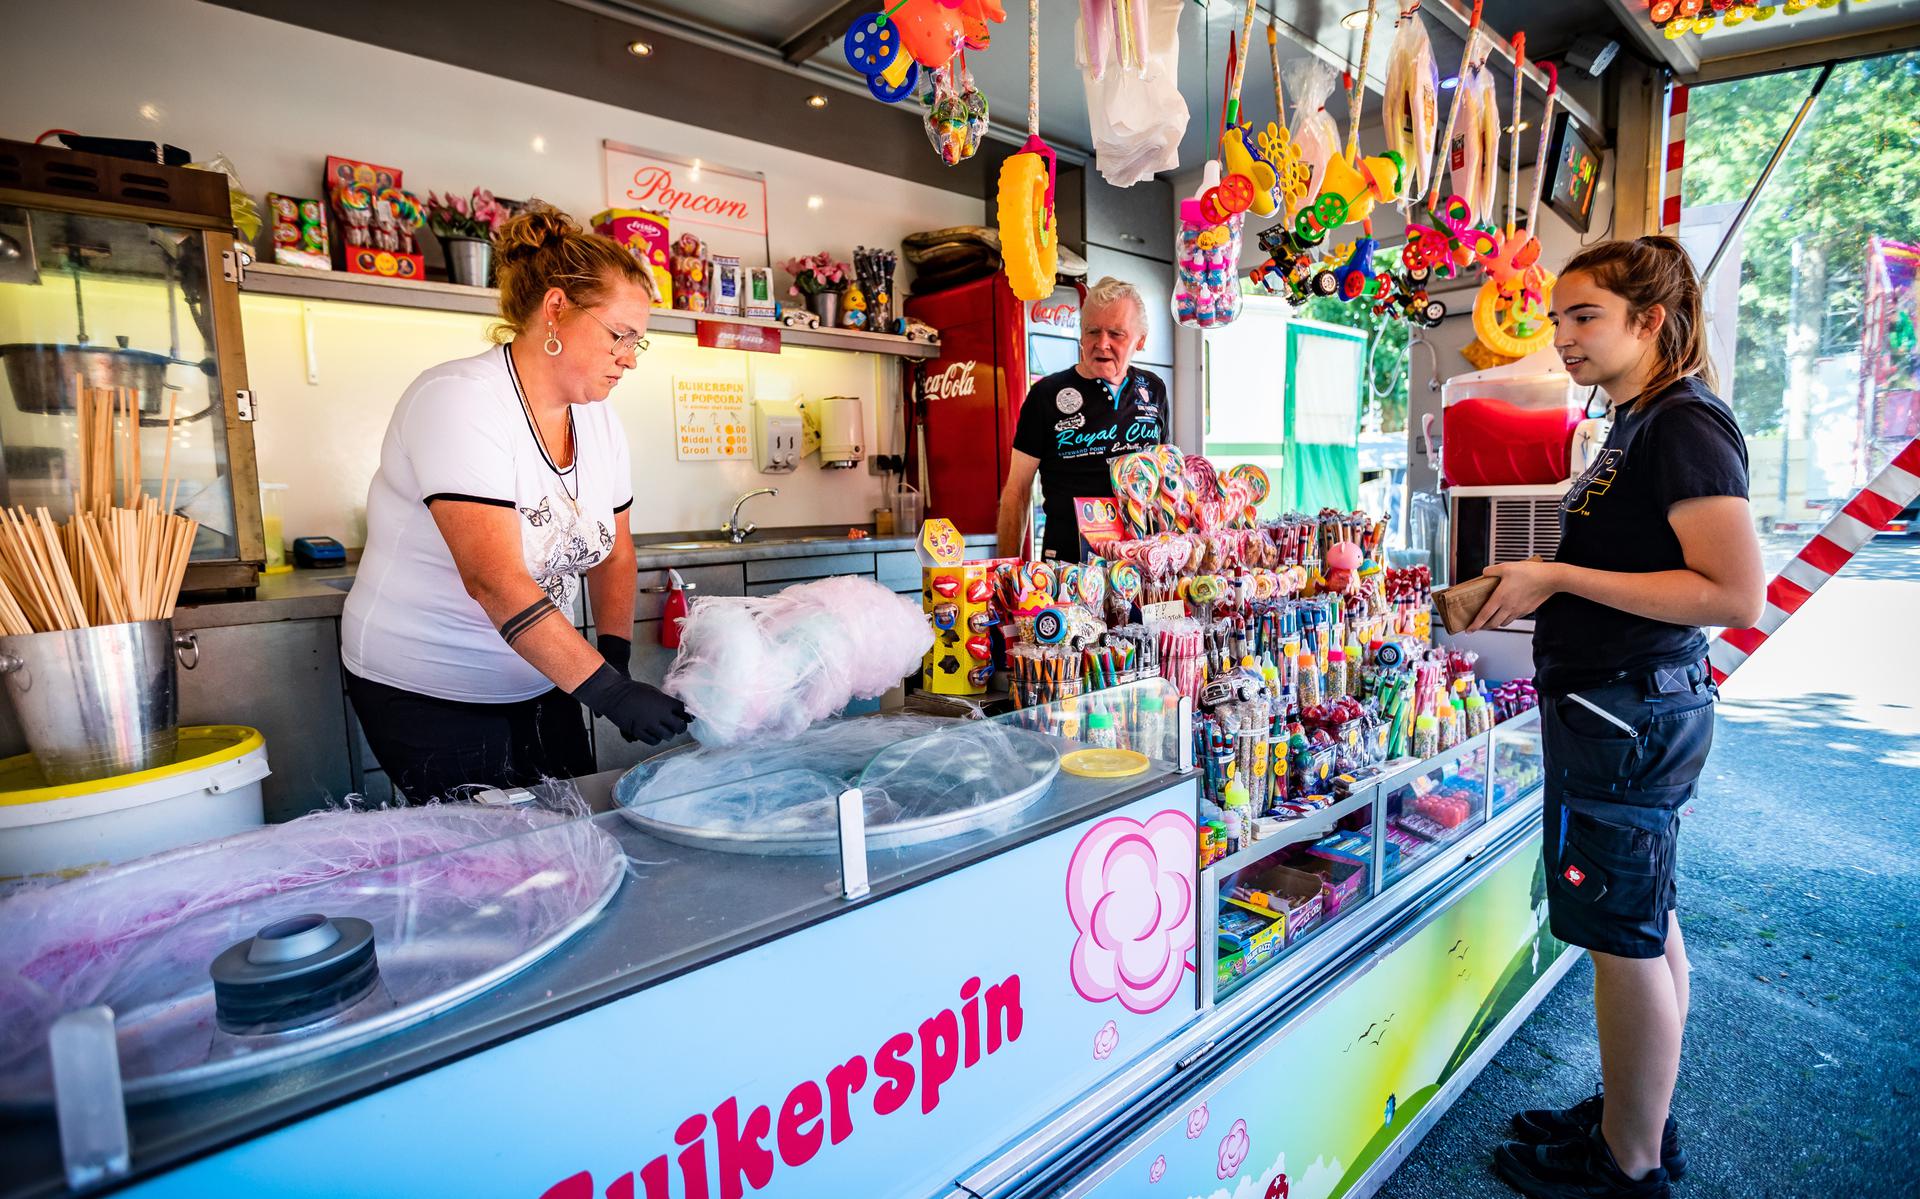 Op woensdag 5 augustus 2020 begon de kermis in Vlagtwedde. Voor Henk en Chantal Swenne, suikerspin- en snoepverkopers, was het de eerste kermis sinds het uitbreken van corona.